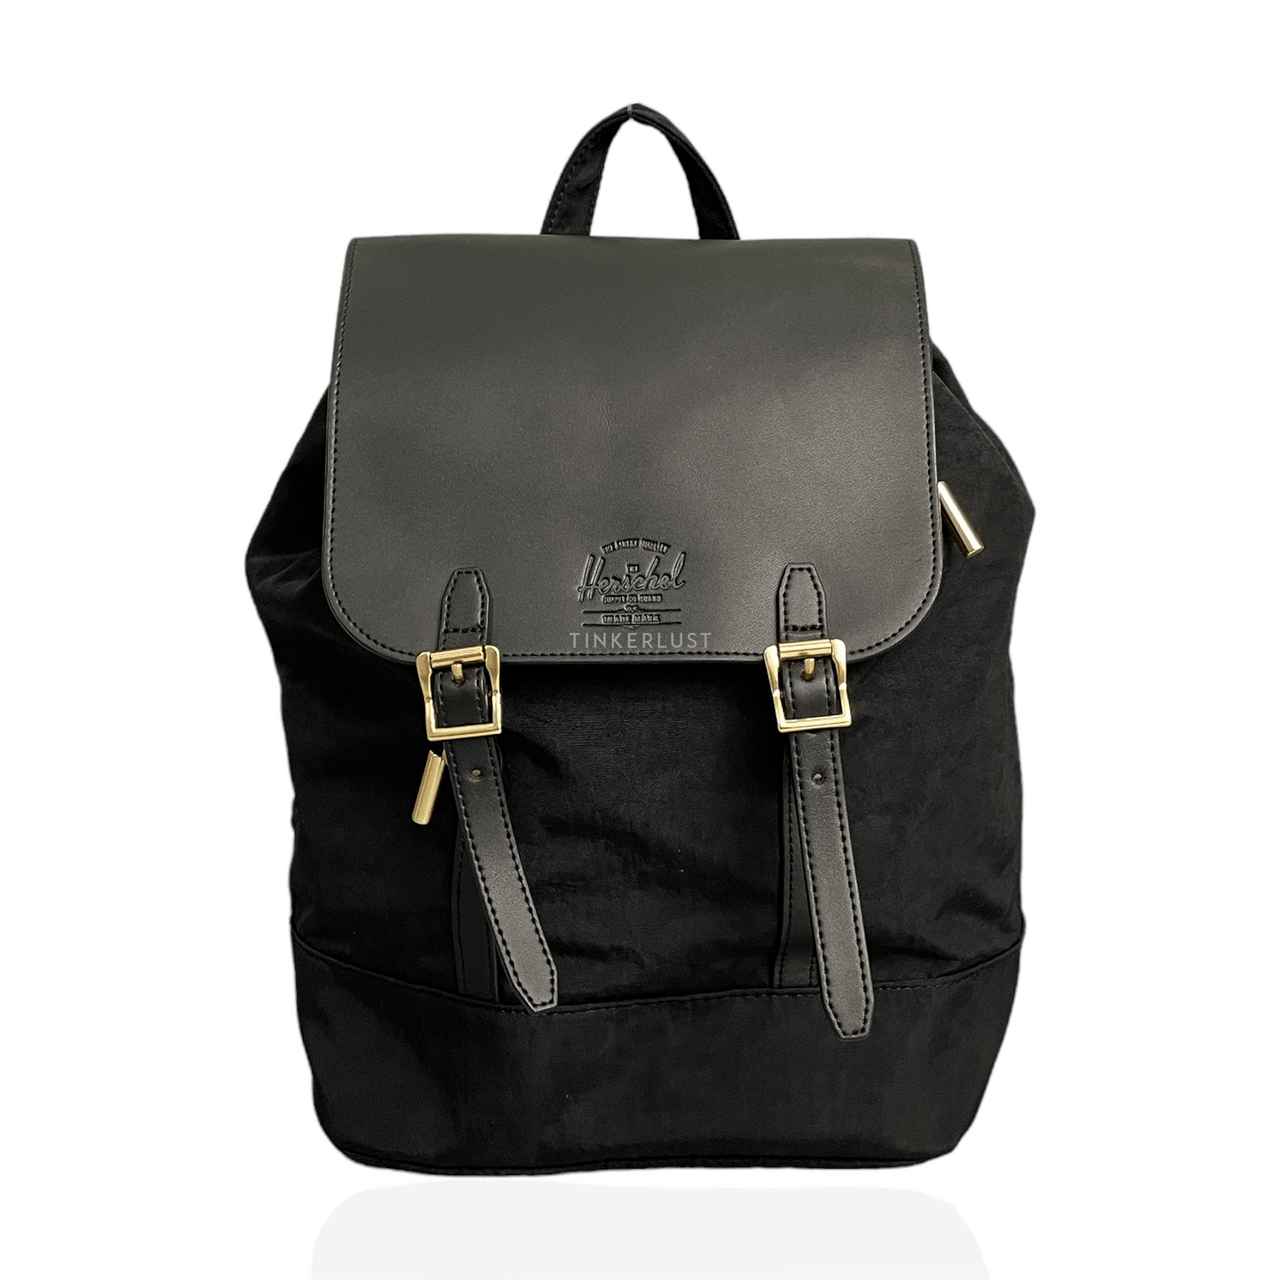 Herschel Black Backpack